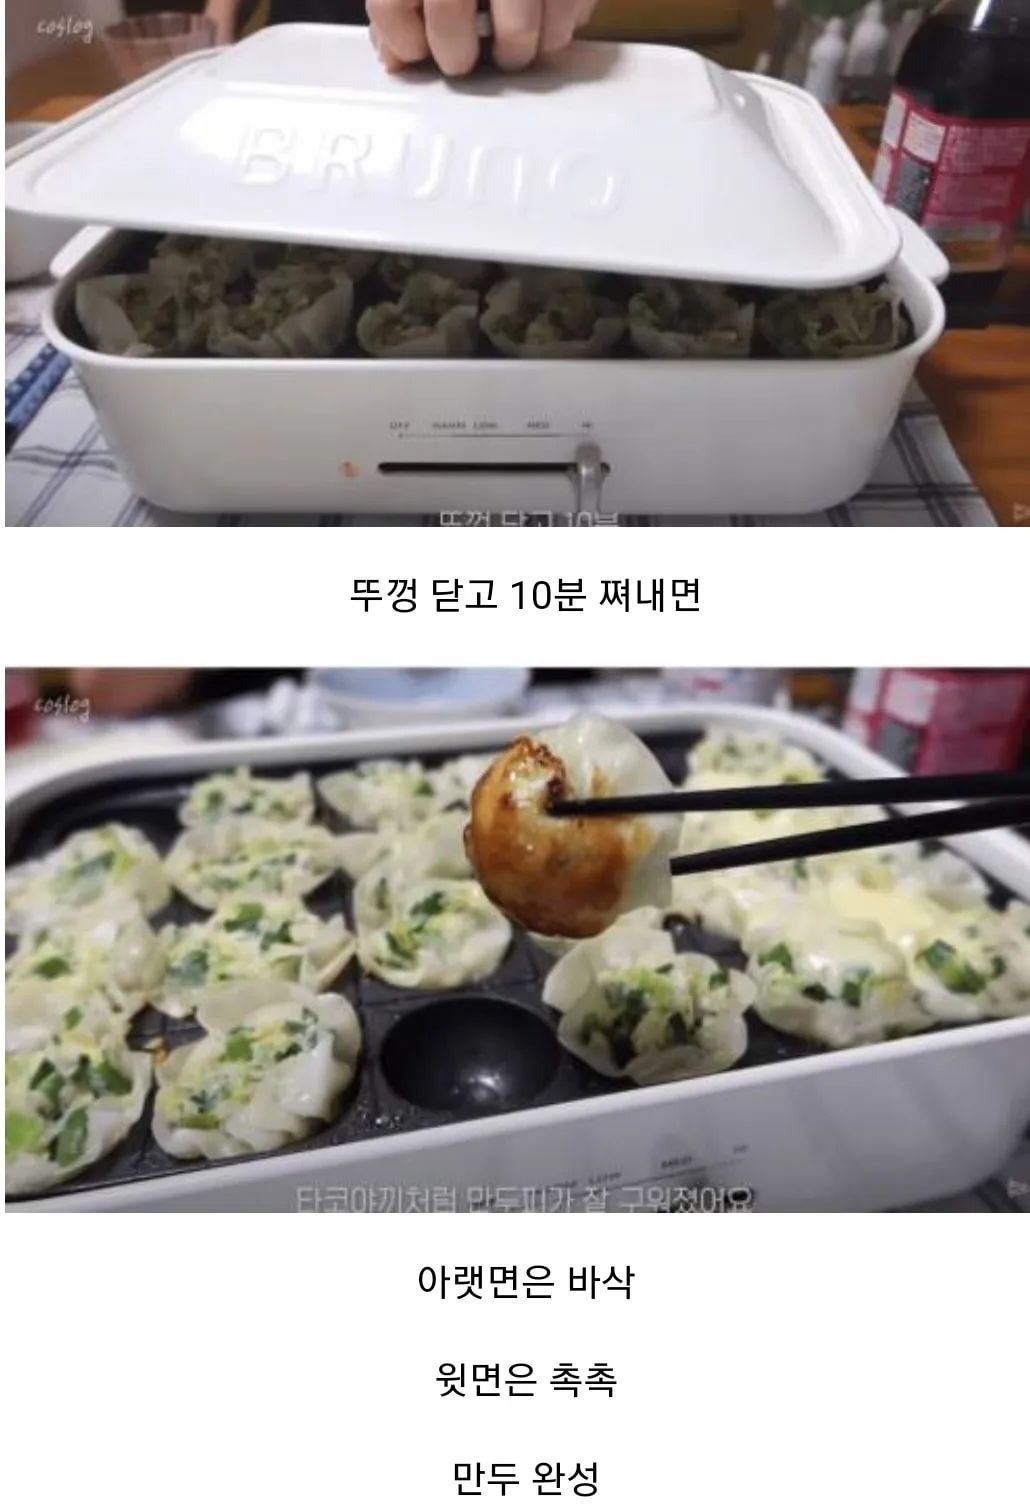 새로운 만두 굽는 방법